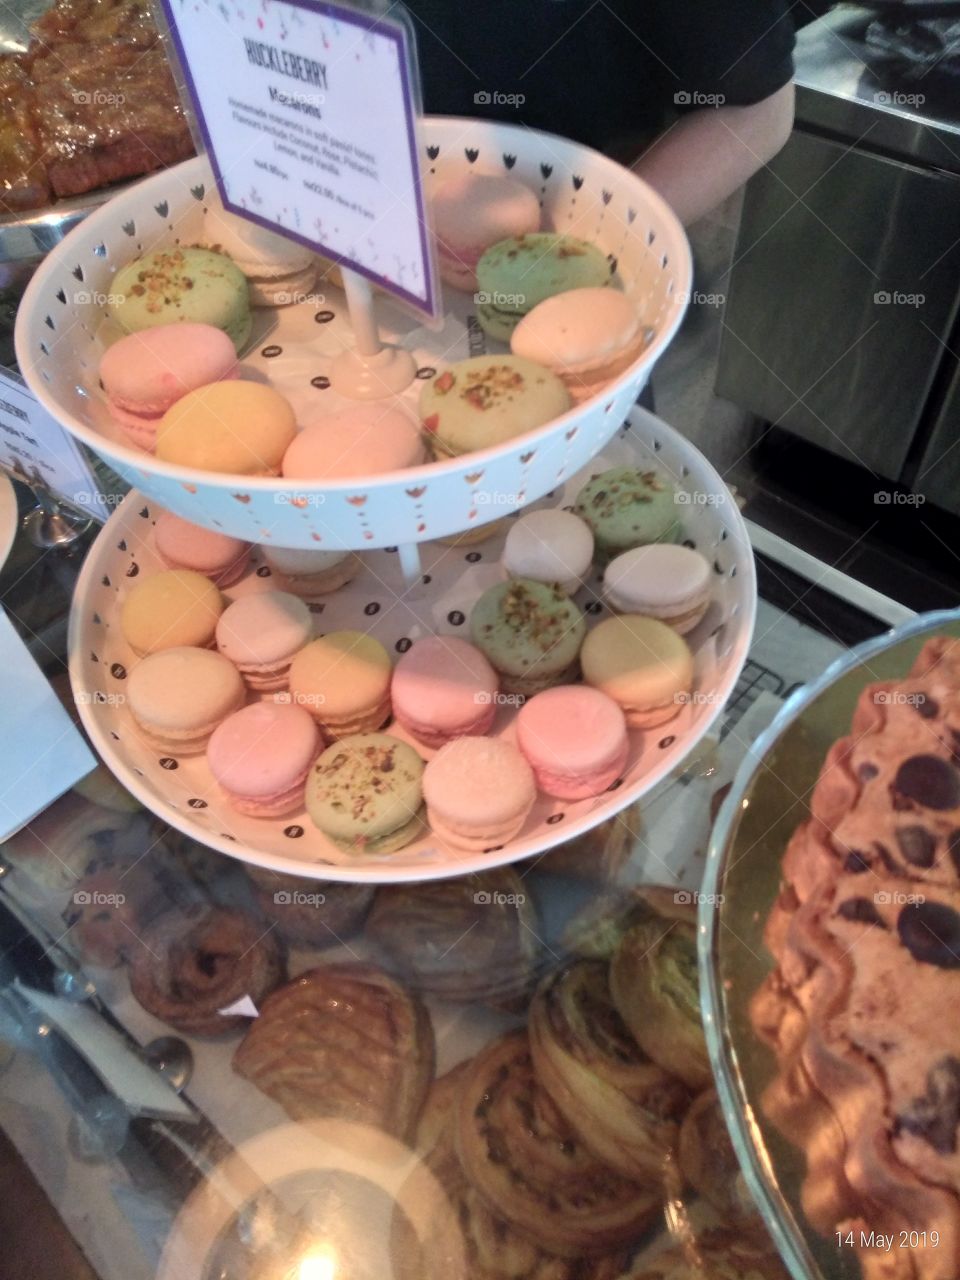 Macaroons galore!
#craftyartificer
#food
#sweet
#dessert
#cafe